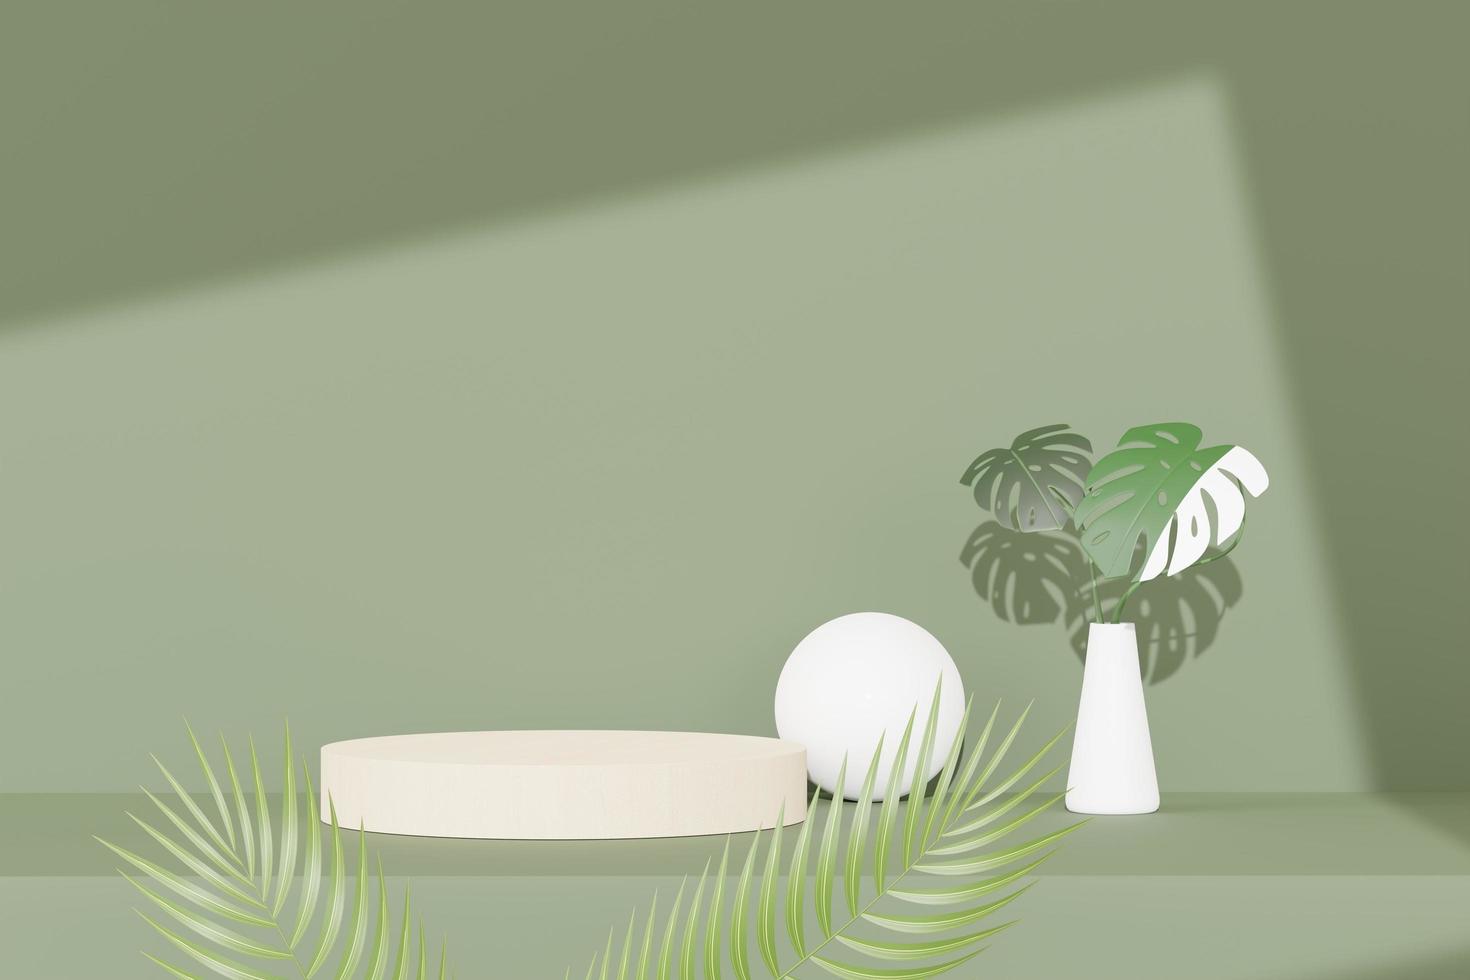 3D render van abstracte voetstuk podium display met tropische monstera bladeren. product- en promotieconcept voor reclame. groene natuurlijke achtergrond. foto